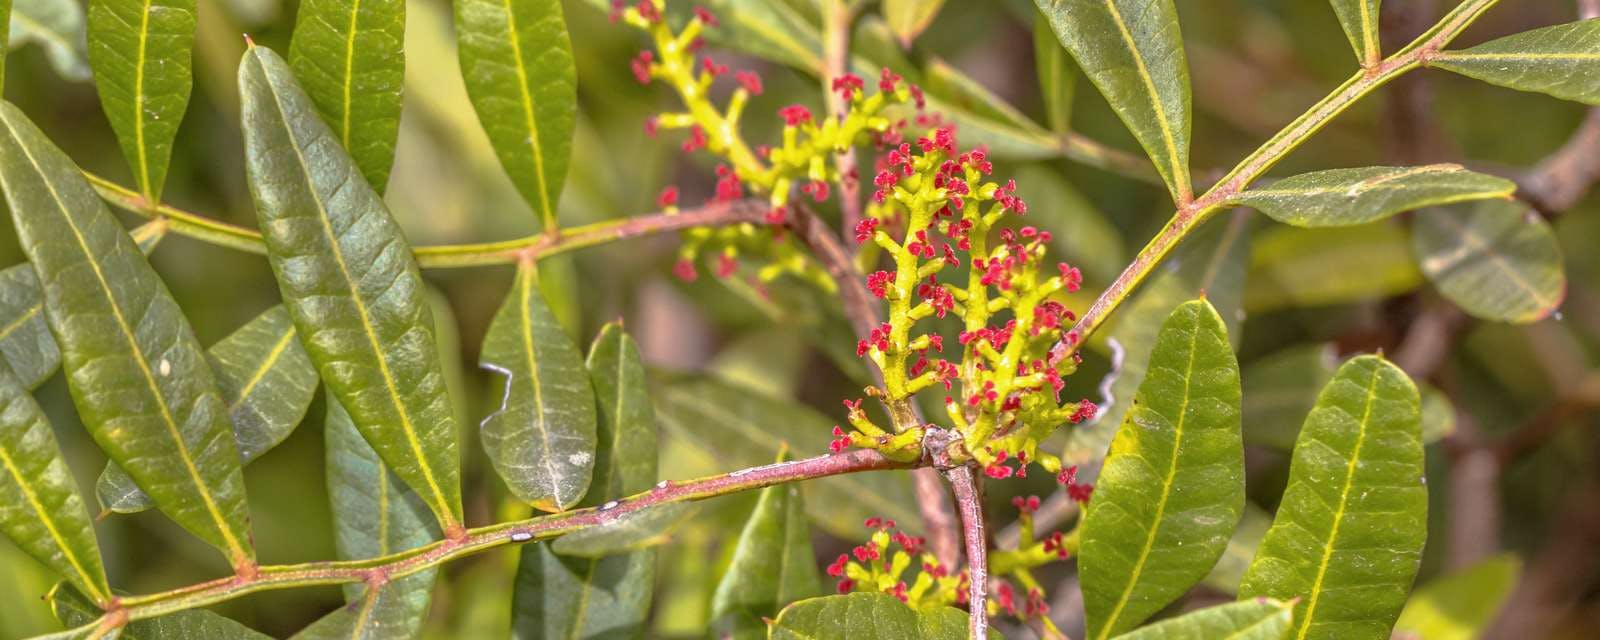 Mastixbaum mit roten Blüten Closeup